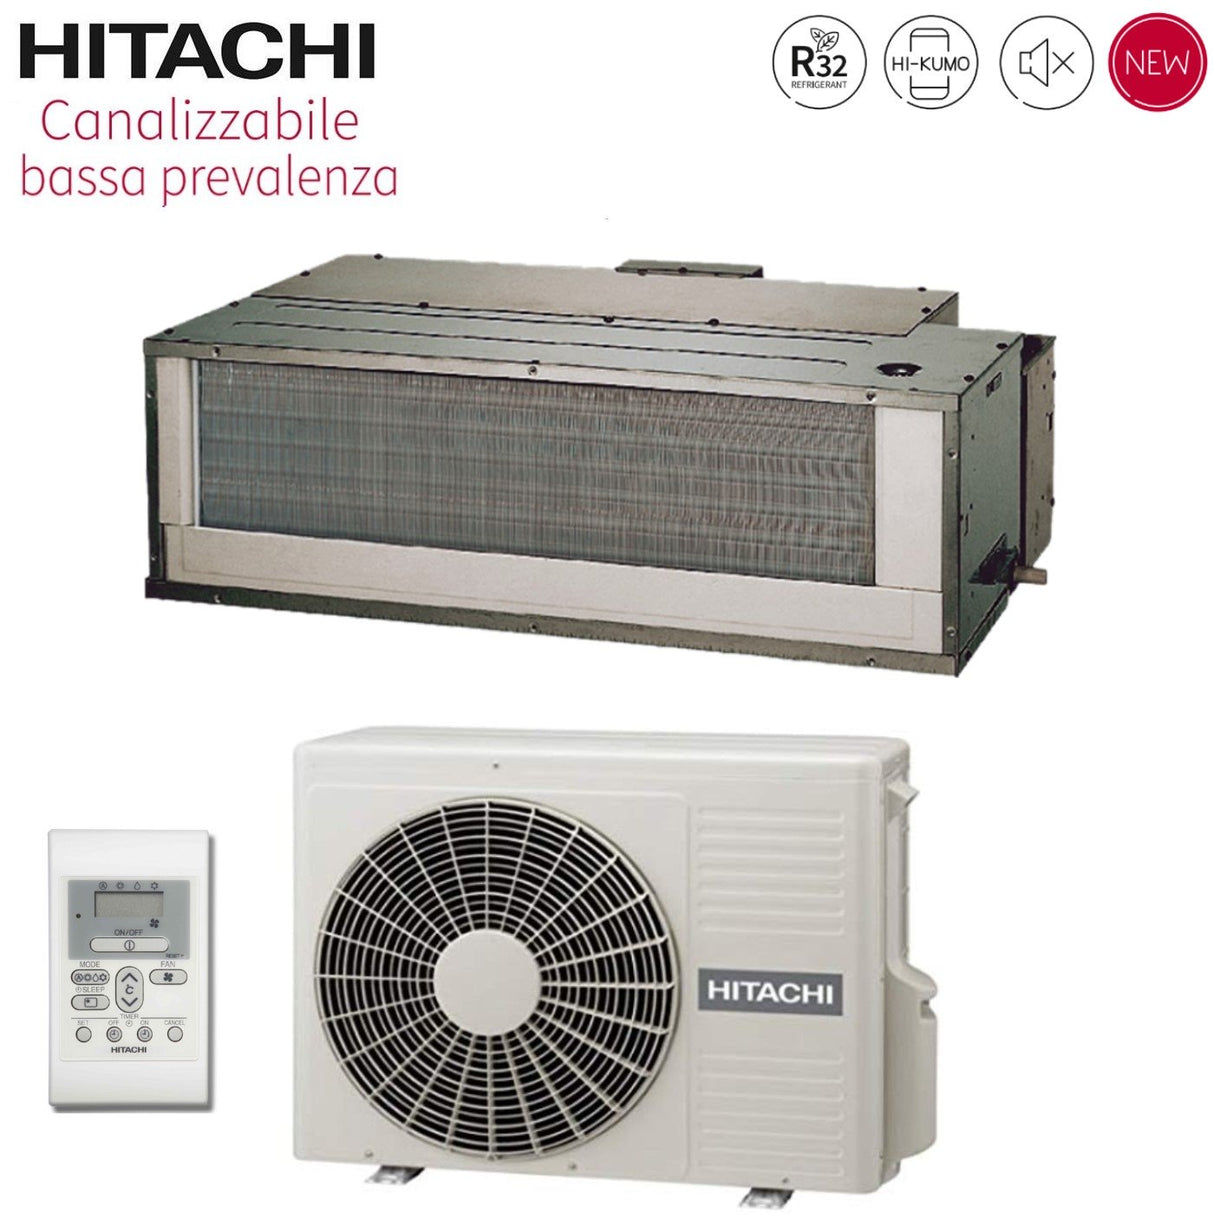 immagine-1-hitachi-climatizzatore-condizionatore-hitachi-inverter-canalizzato-bassa-prevalenza-12000-btu-rad-35rpe-r-32-wi-fi-optional-con-comando-a-parete-novita